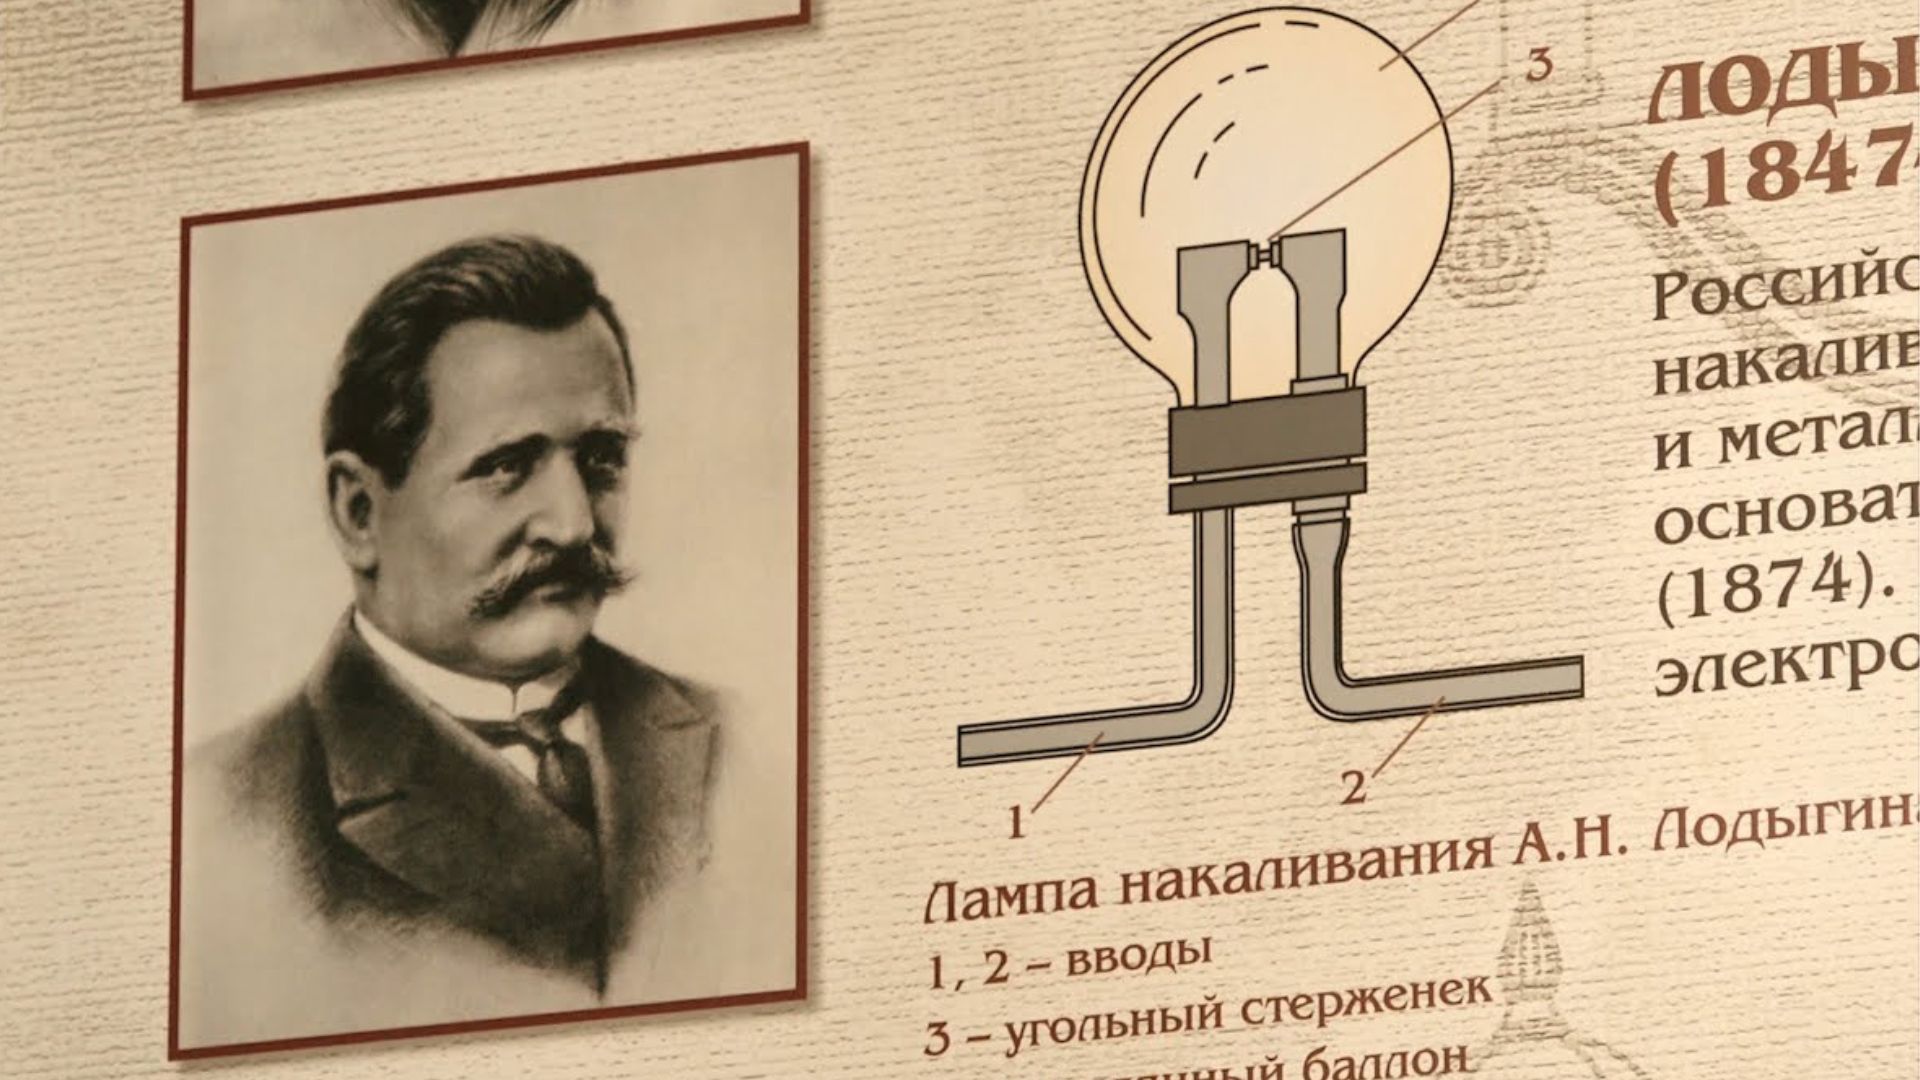 К 175-летию со дня рождения А.Н. Лодыгина, изобретателя лампы накаливания